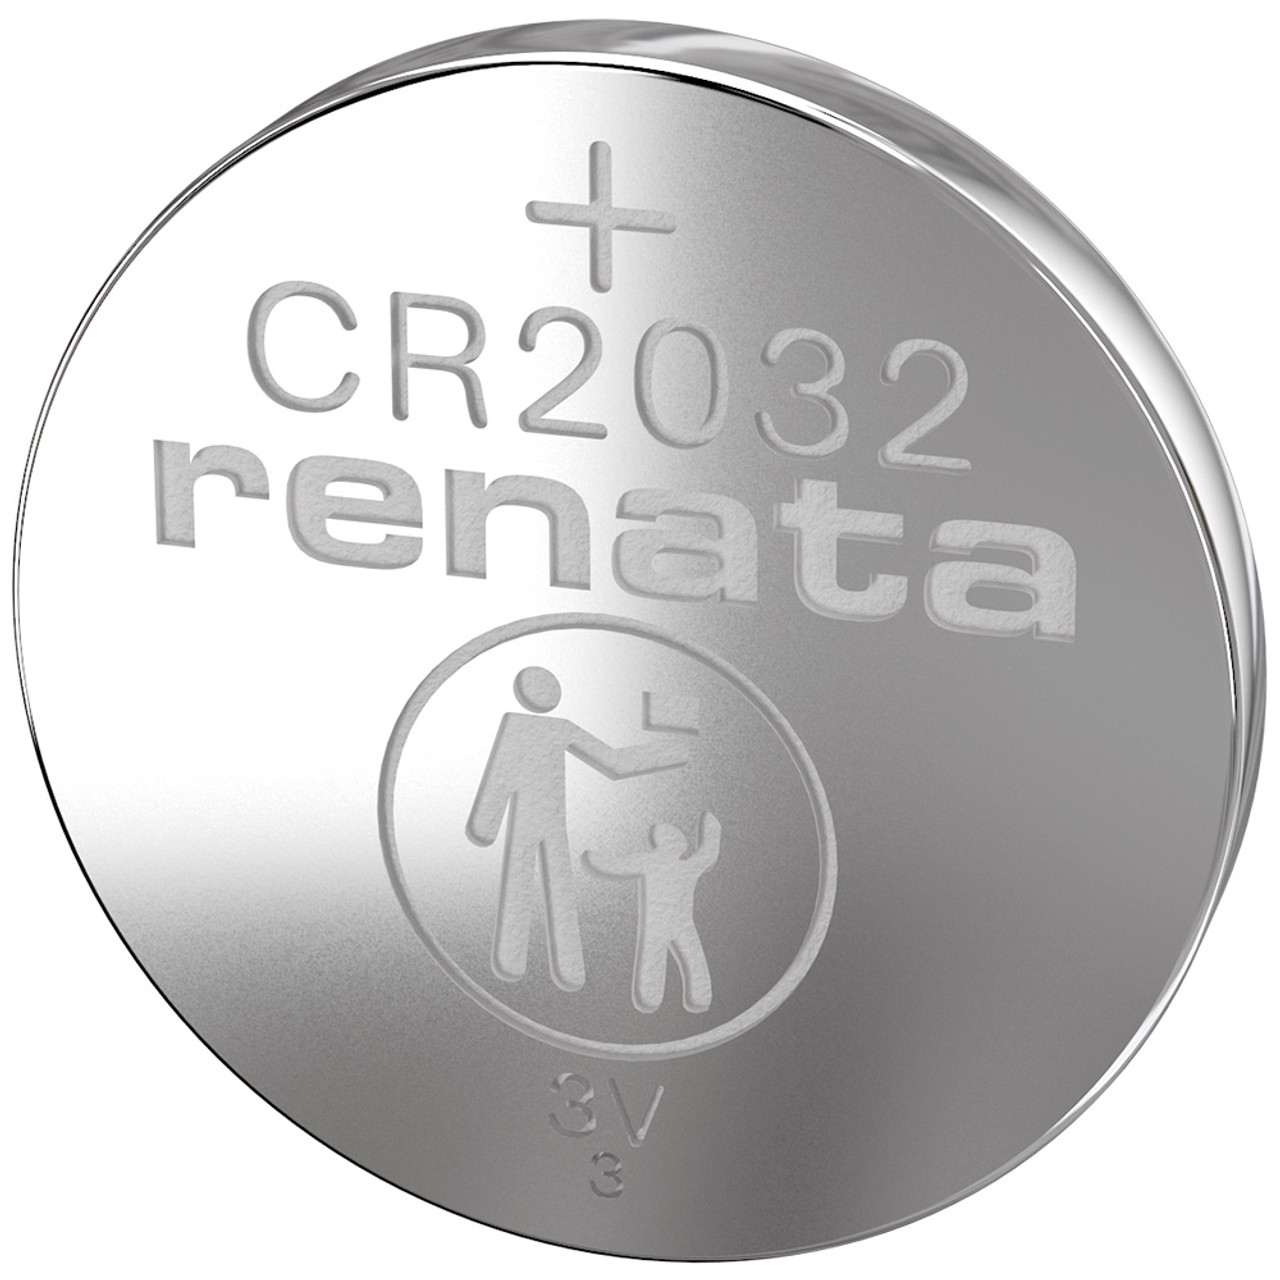 CR2032 Battery. Renata CR 2032 3V Coin Cell Battery